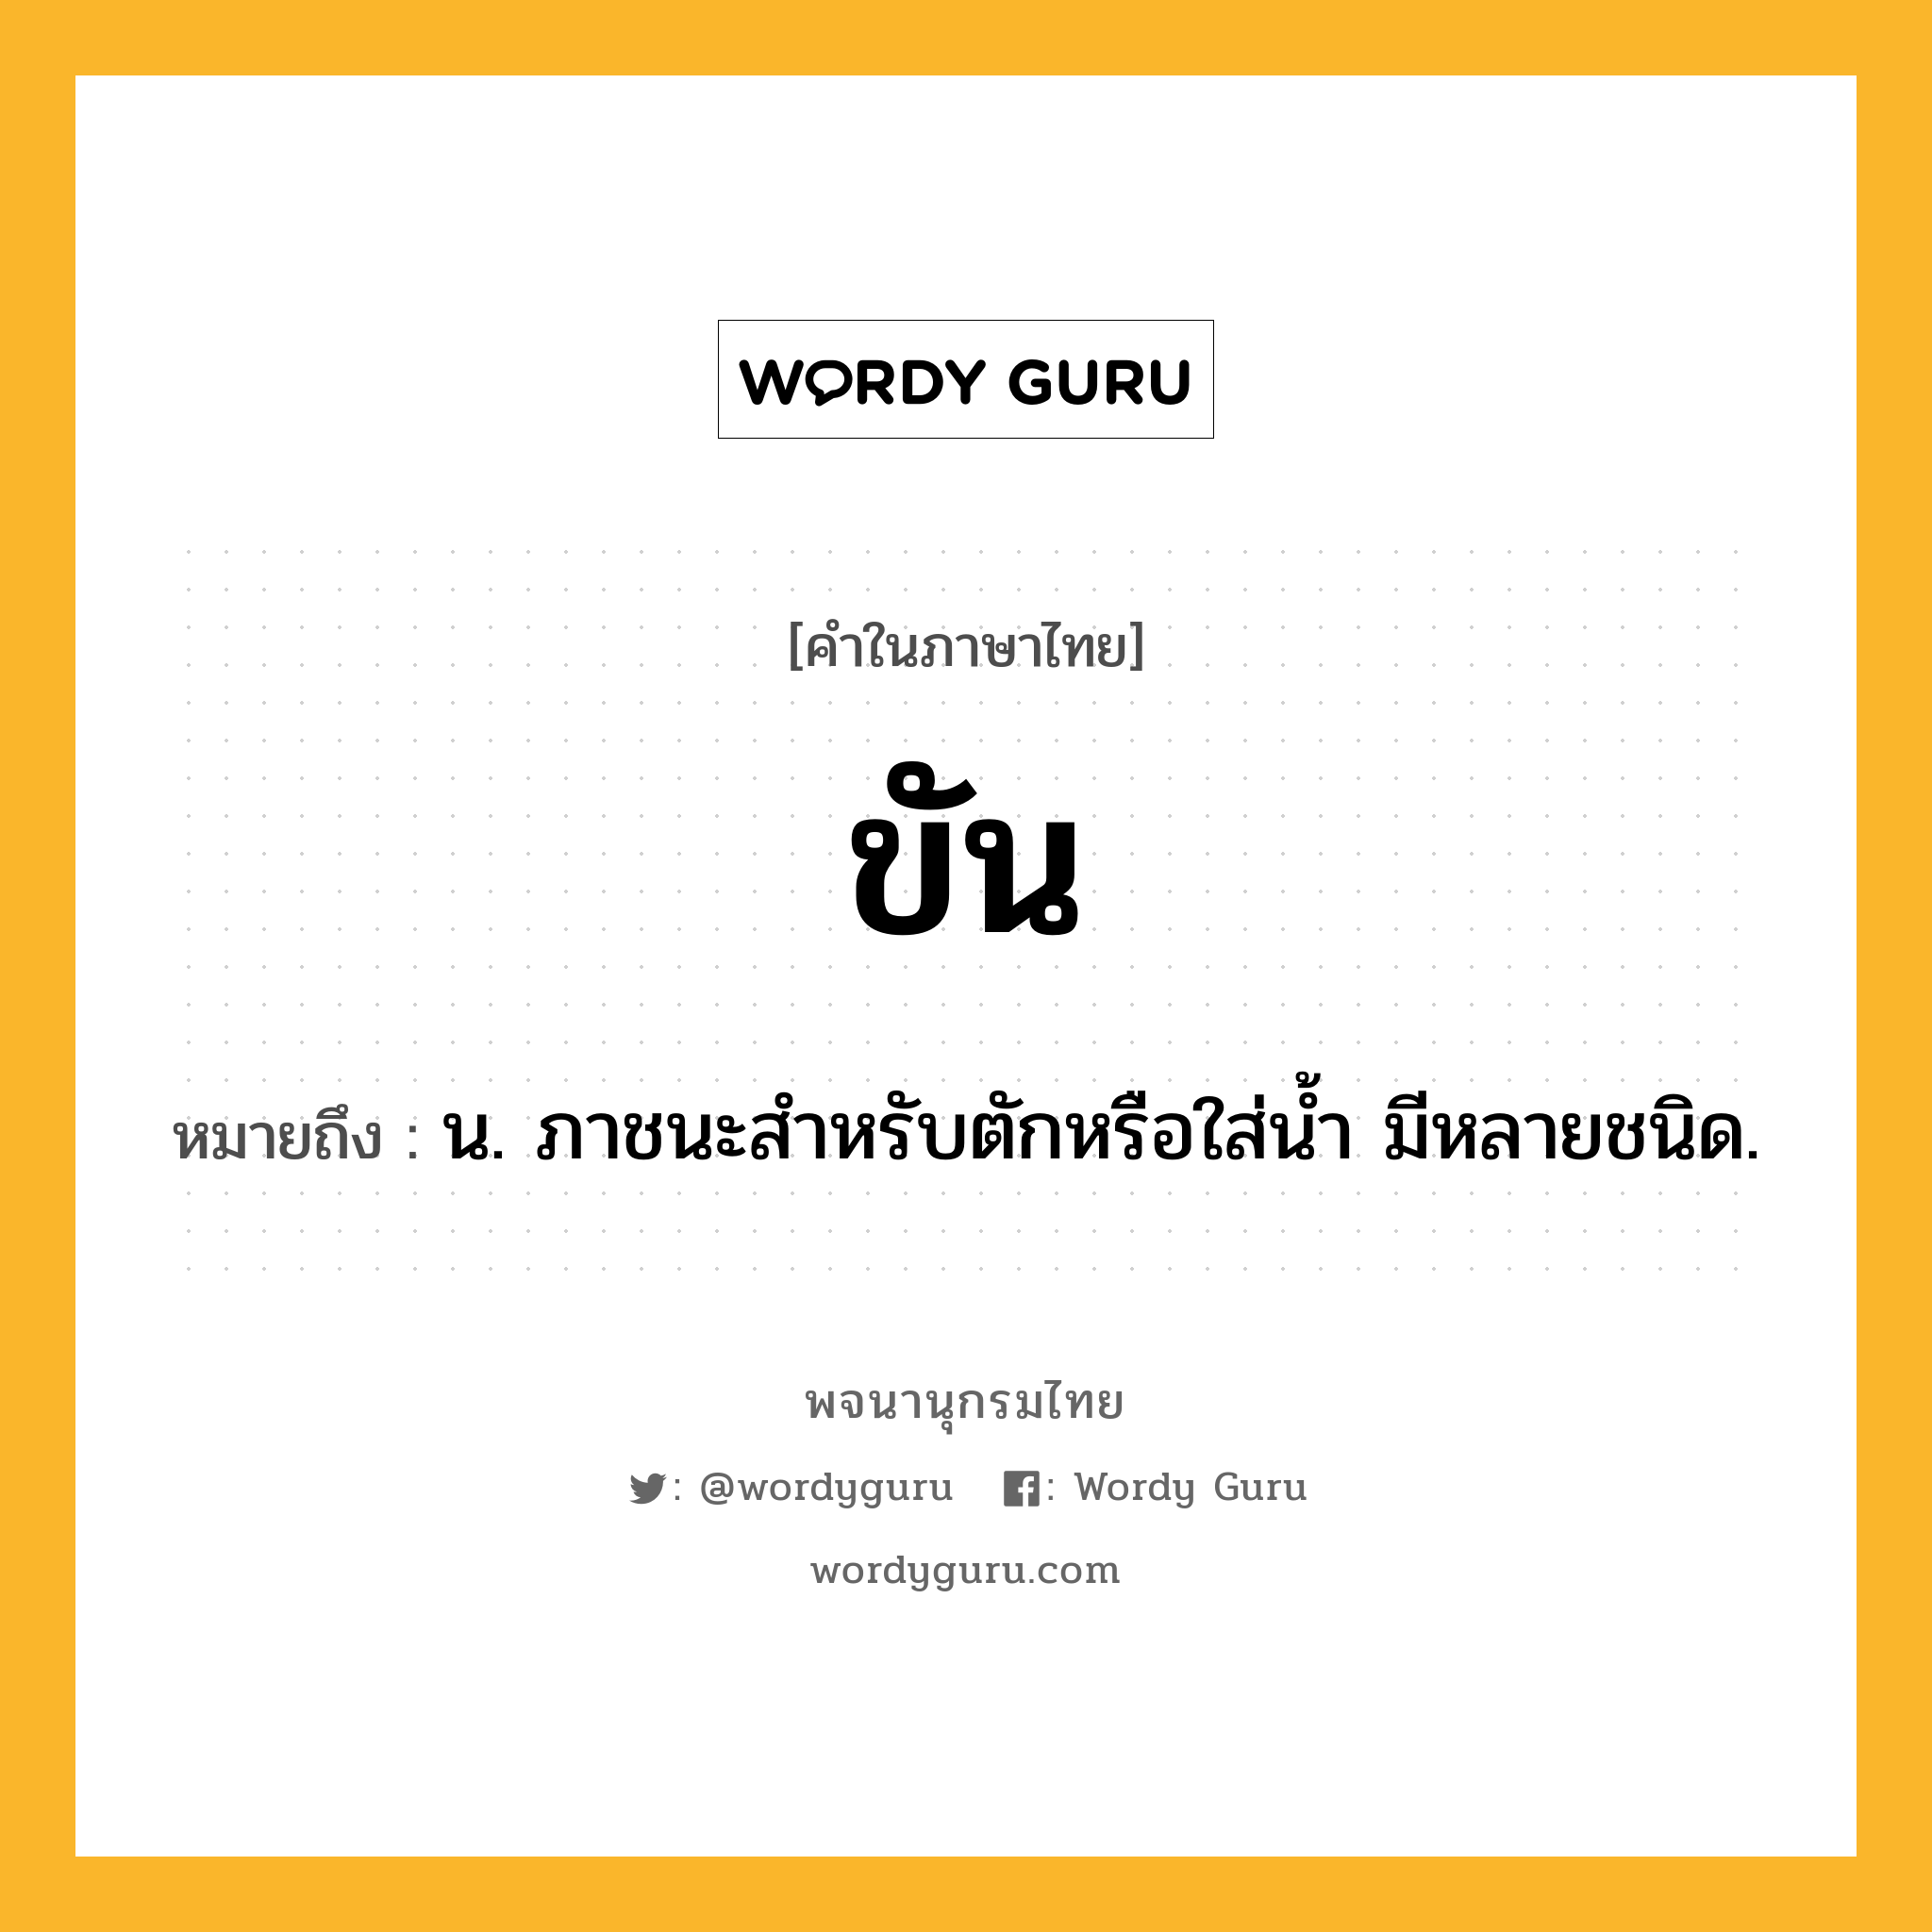 ขัน ความหมาย หมายถึงอะไร?, คำในภาษาไทย ขัน หมายถึง น. ภาชนะสําหรับตักหรือใส่นํ้า มีหลายชนิด.